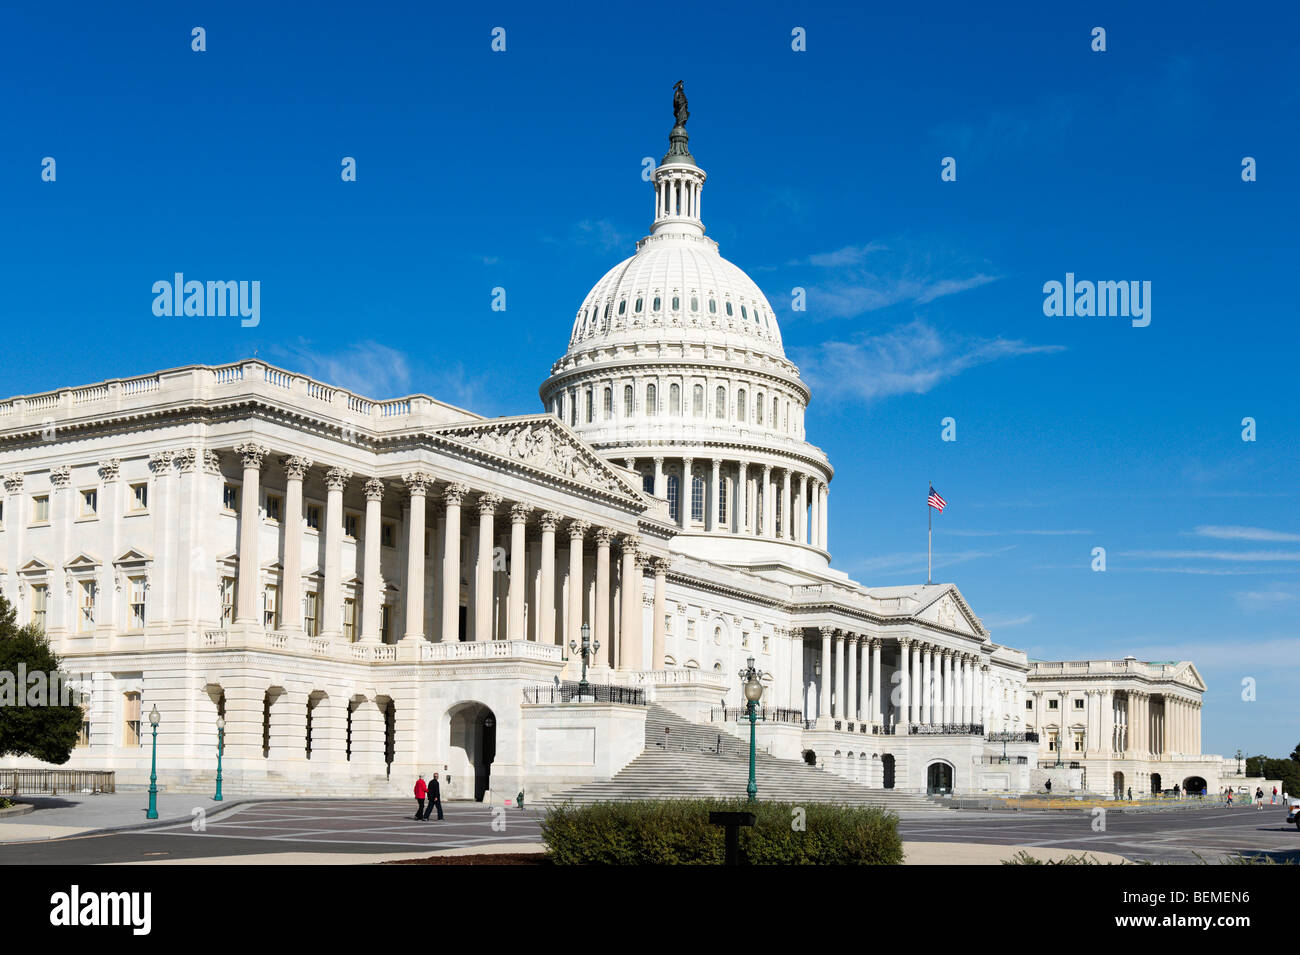 La façade est du Capitole, Washington D.C, USA Banque D'Images